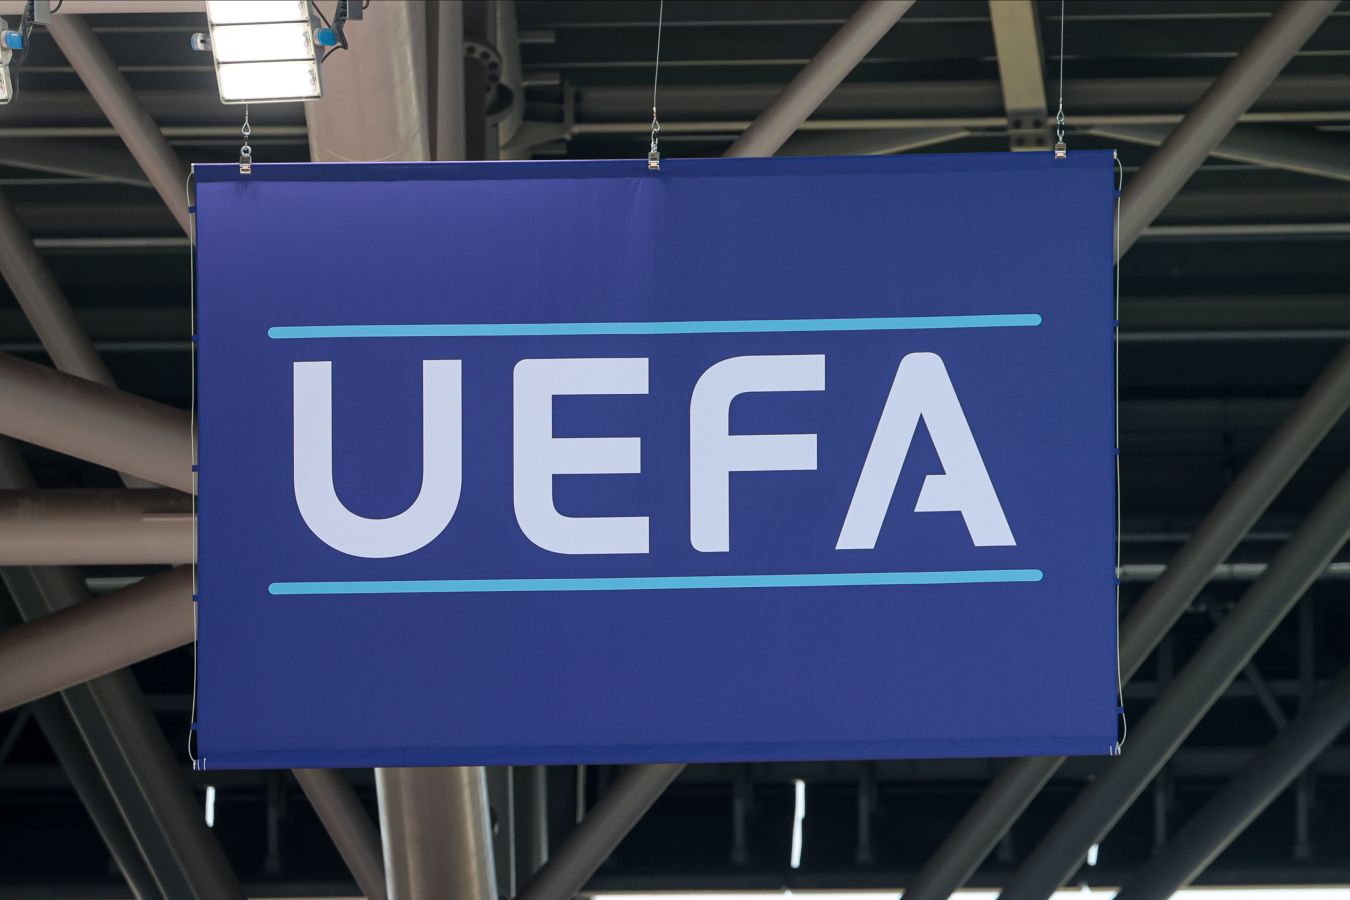 УЕФА возбудил дисциплинарное производство в отношении Родри и Мораты по четырём пунктам